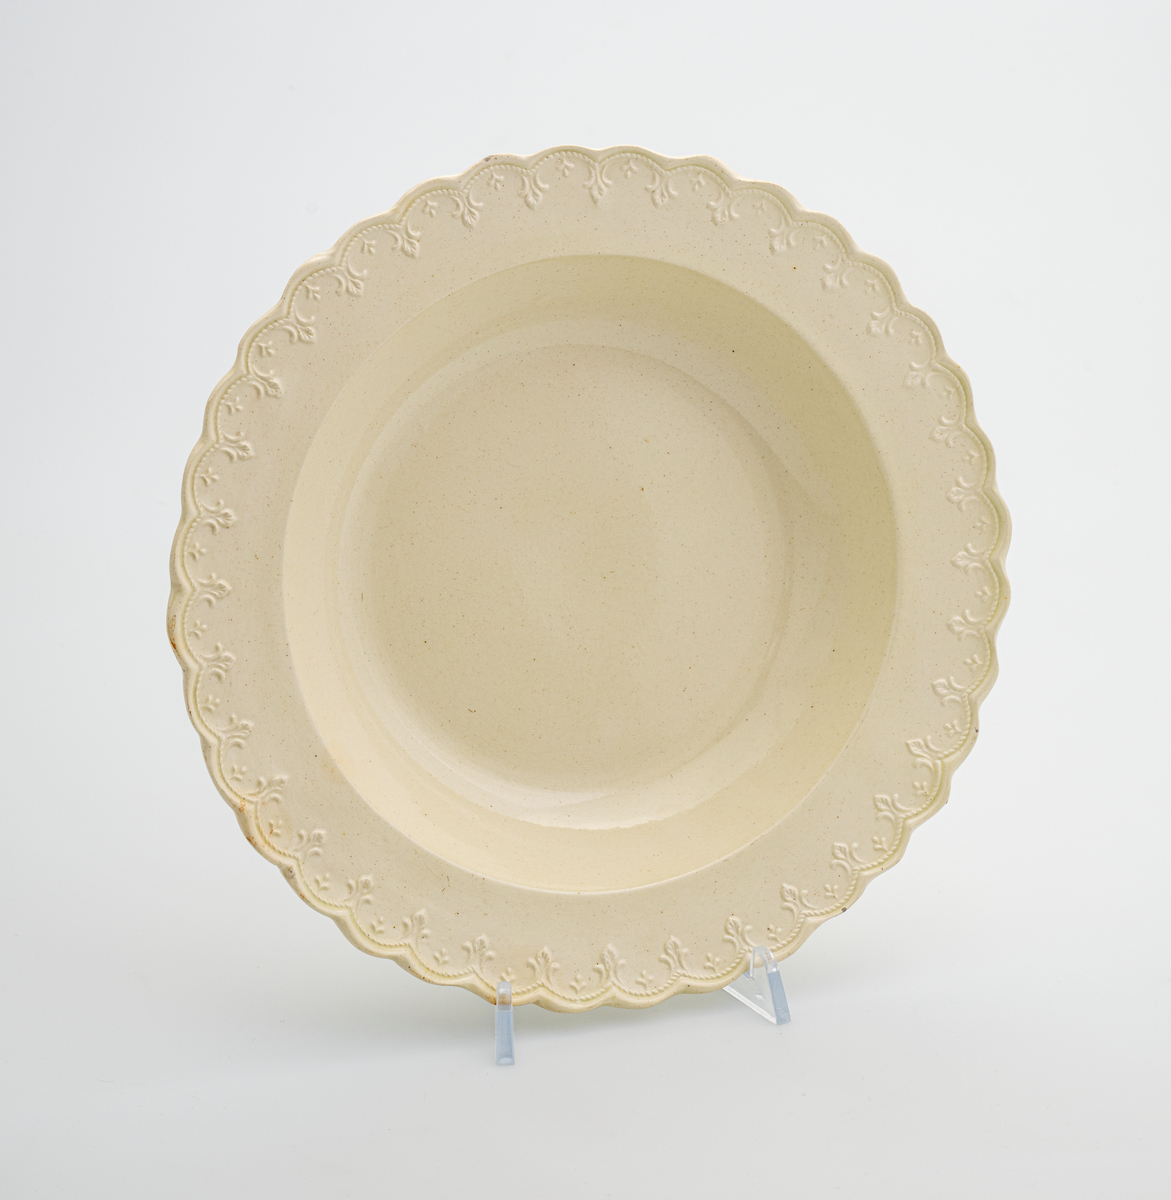 En dyp tallerken av glasert steintøy (creamware). Den er hvitgul på farge (ensfarget). Langs kanten er det tungekant. Innenfor tungekanten er det støpt dekor i form av en hjertebord med stiliserte blomster.